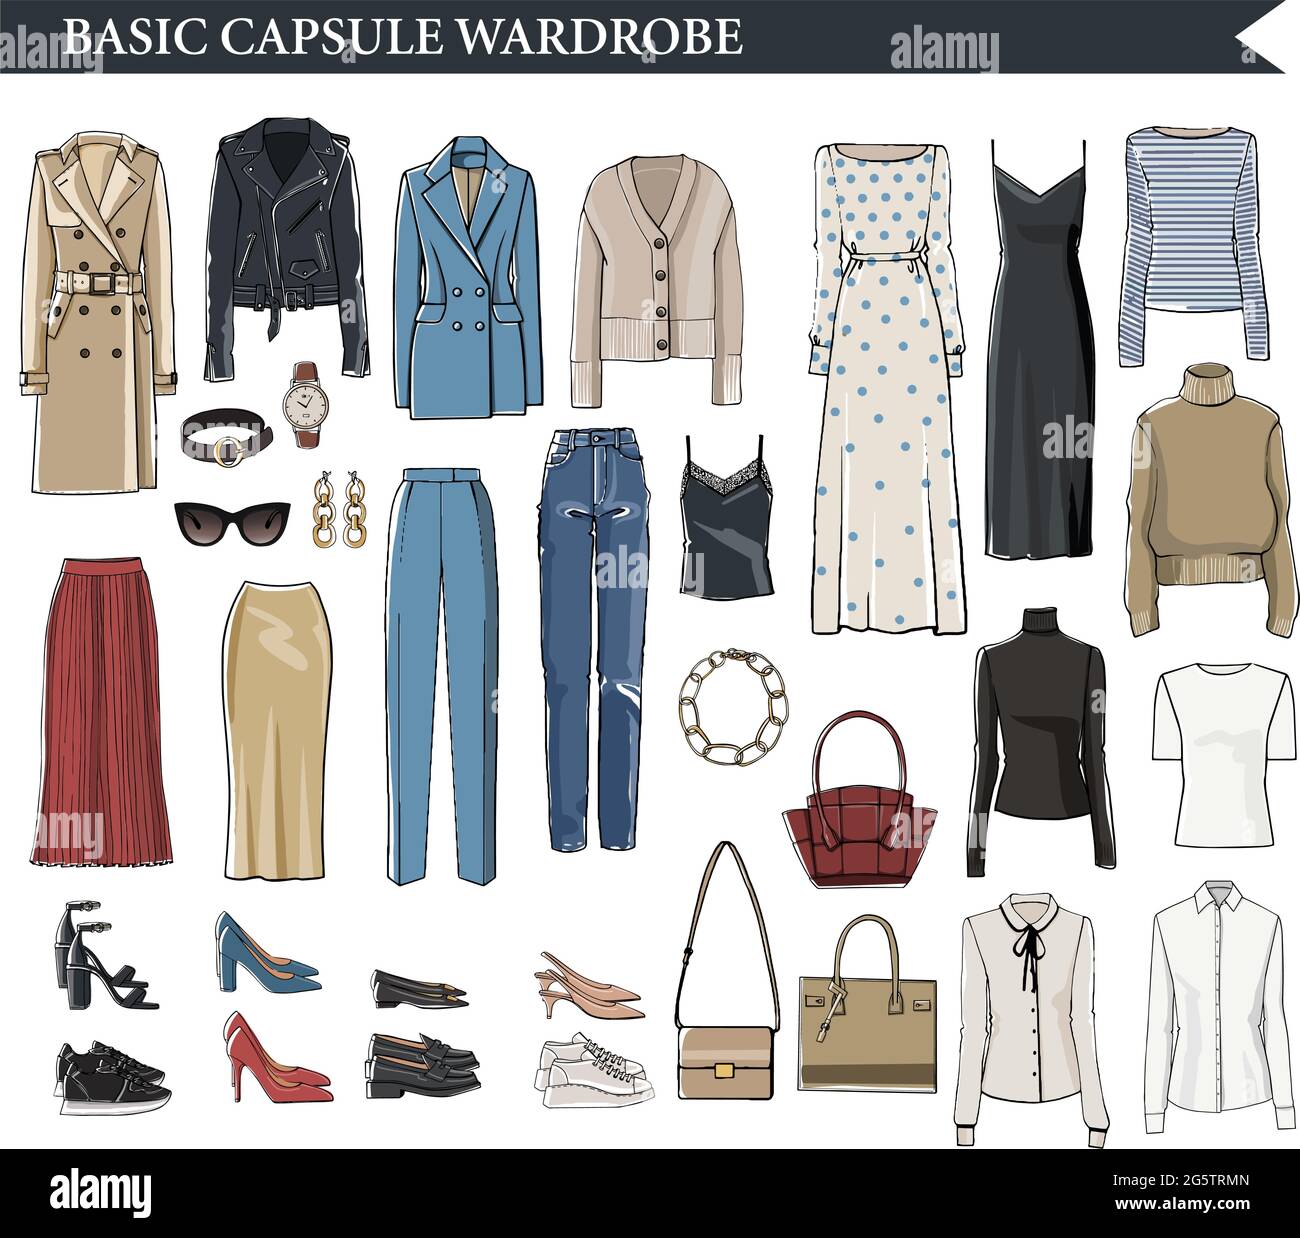 Basic capsule wardrobe for elegant women vector Stock Vector Image ...